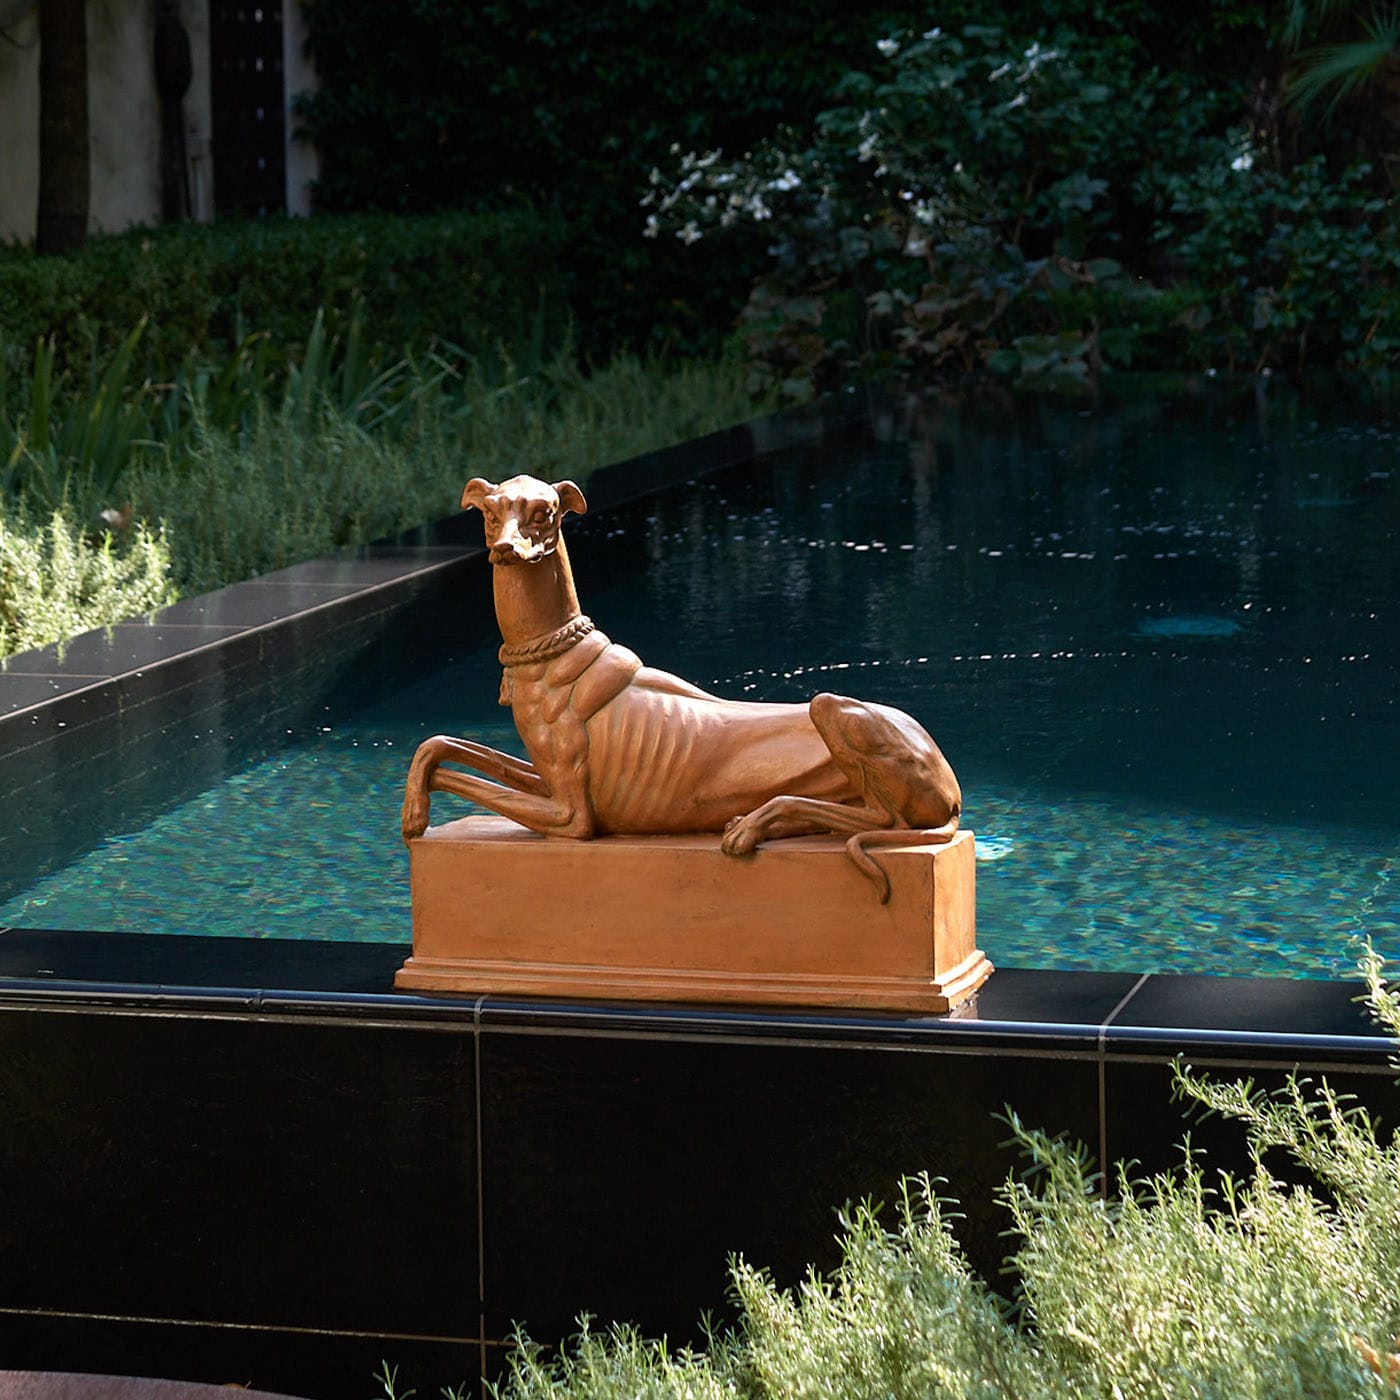 Greyhound Statuette - Ceramiche Ceccarelli